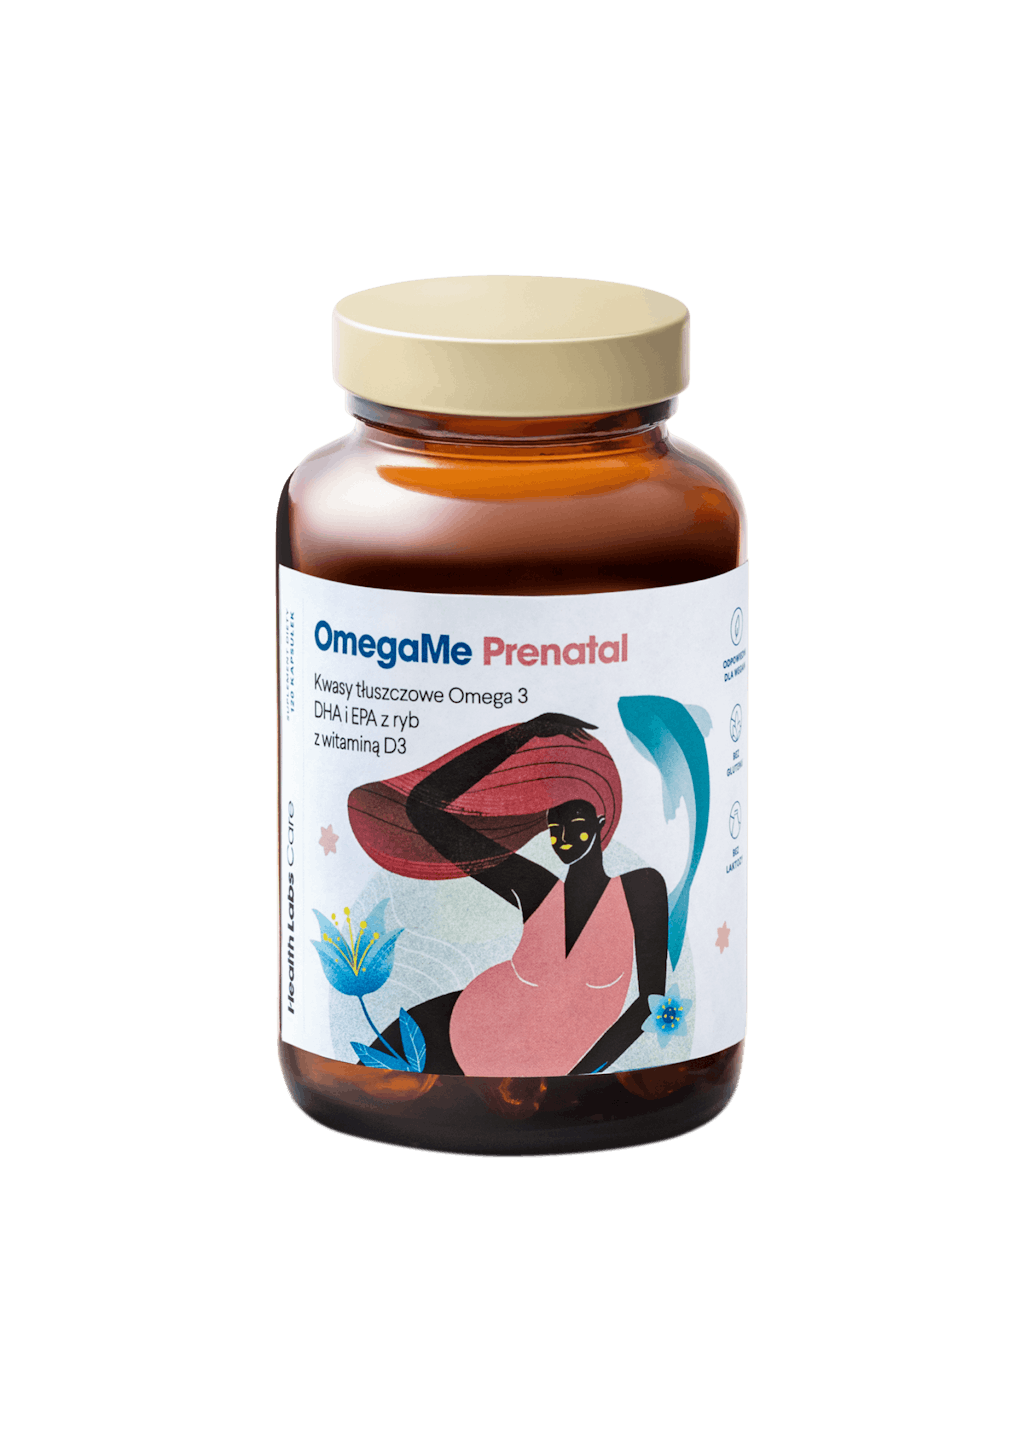 OmegaMe Prenatal